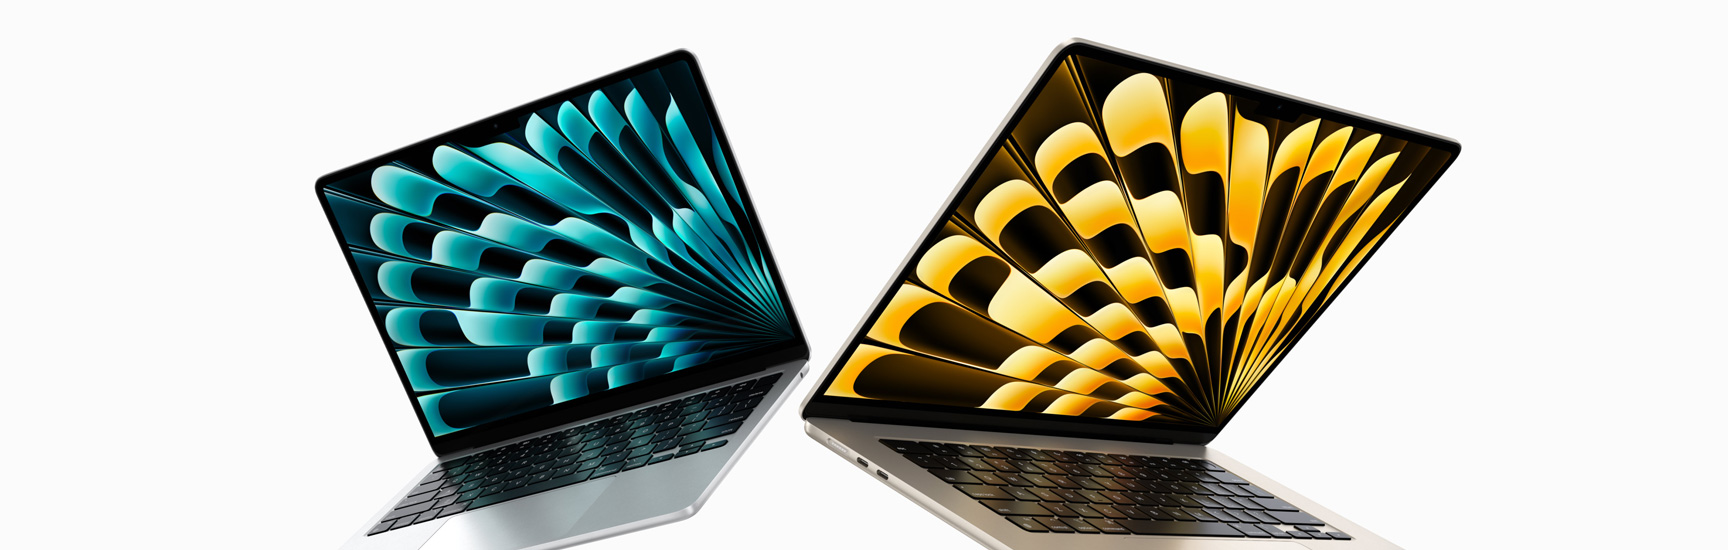 Vorderansicht von halb geöffneten 13" und 15" MacBook Air Modellen in Silber und Polarstern, die Unterschiede bei der Displaygröße zeigen.